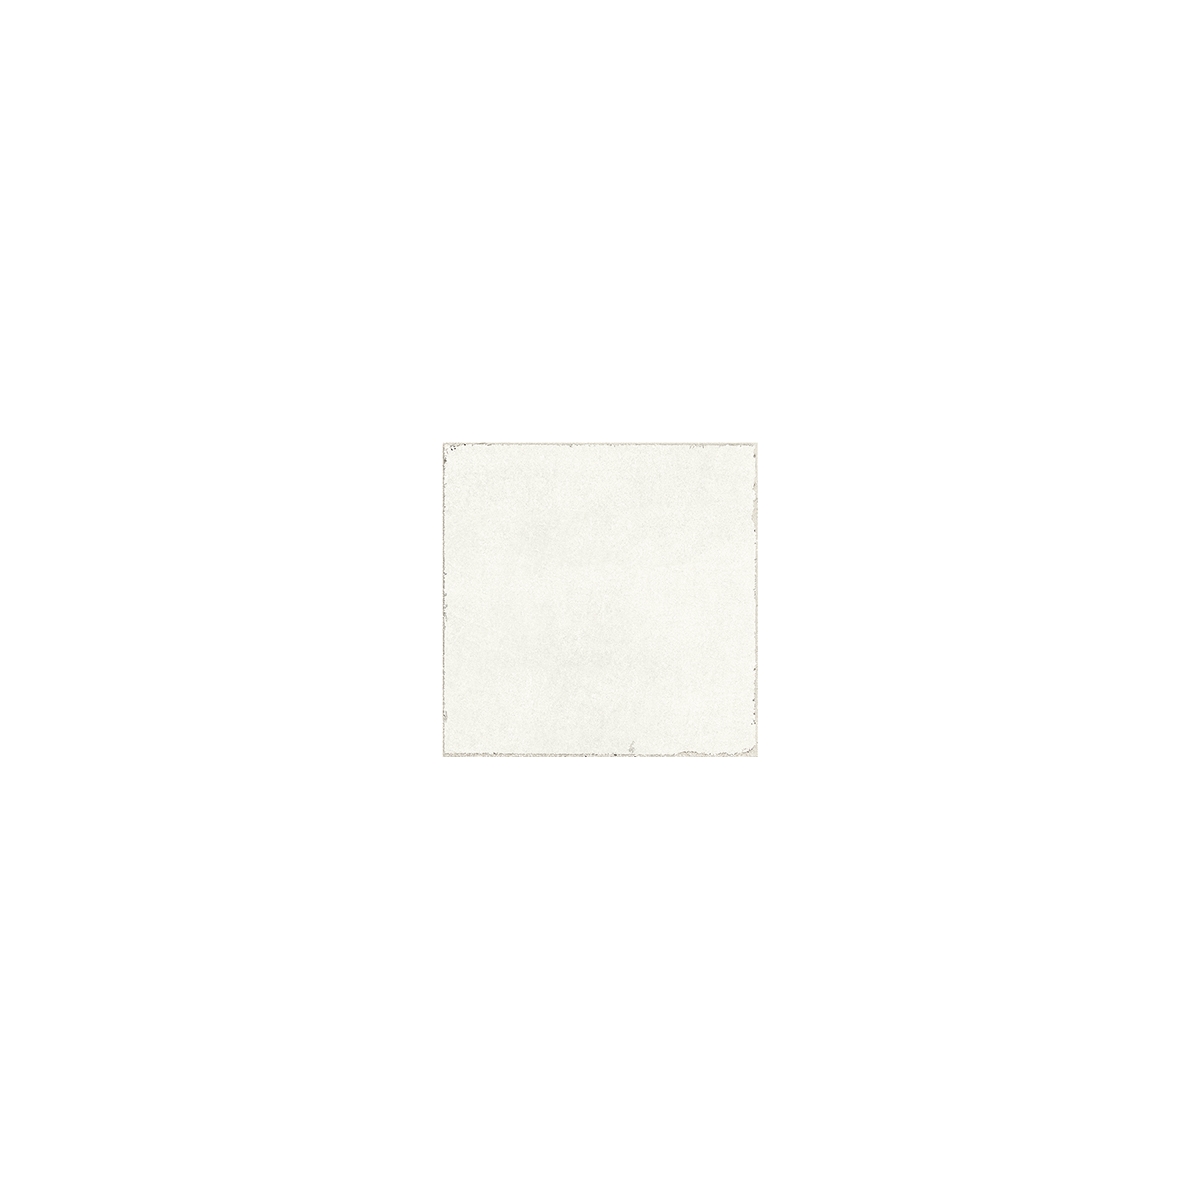 Detalle de Valencia Blanco 20x20 (Caja 0,56 m2)